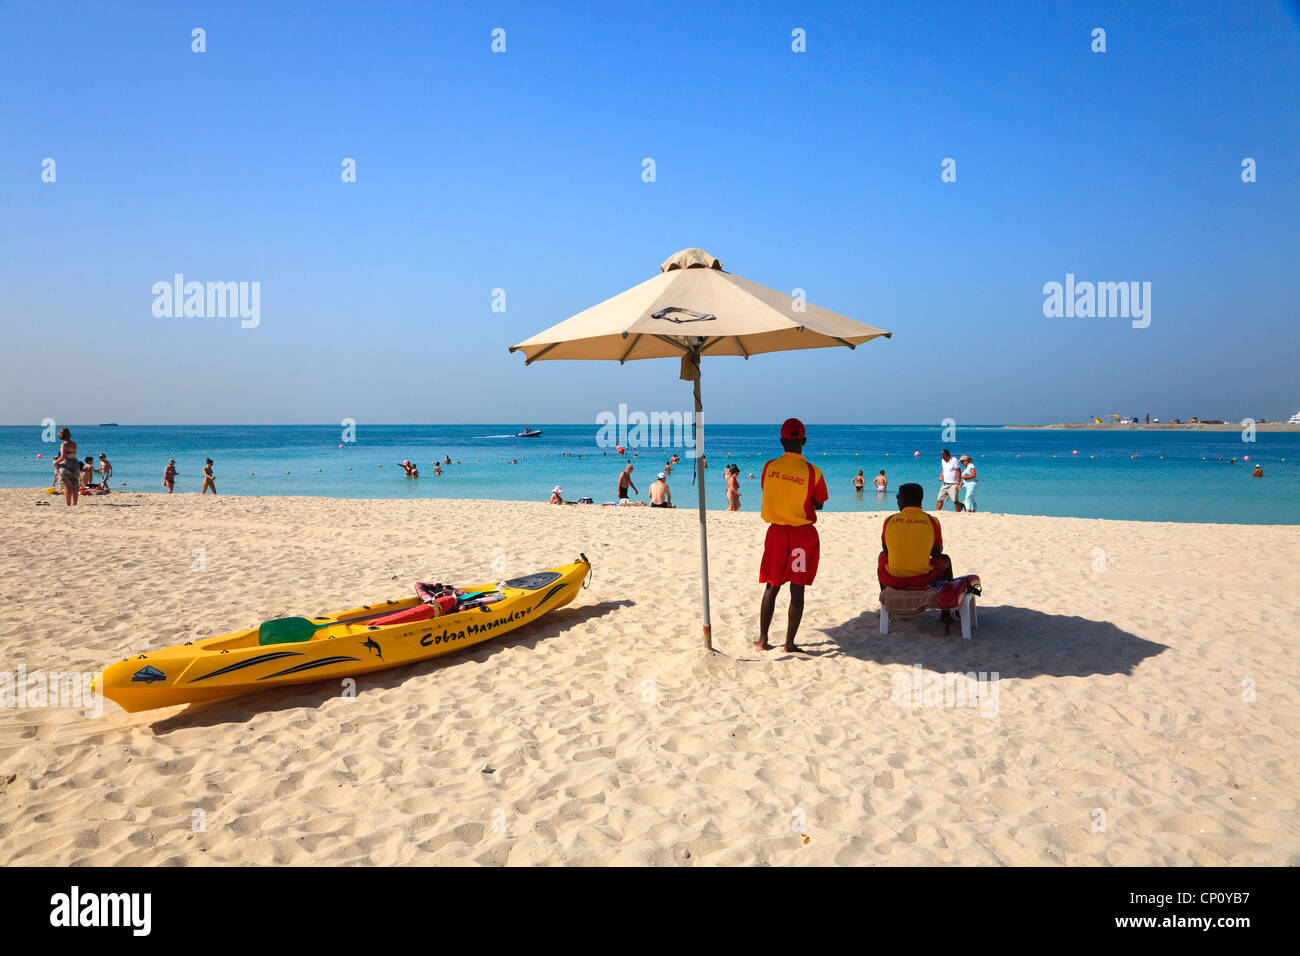 Lifeguard on duty at Dubai beach, UAE Stock Photo